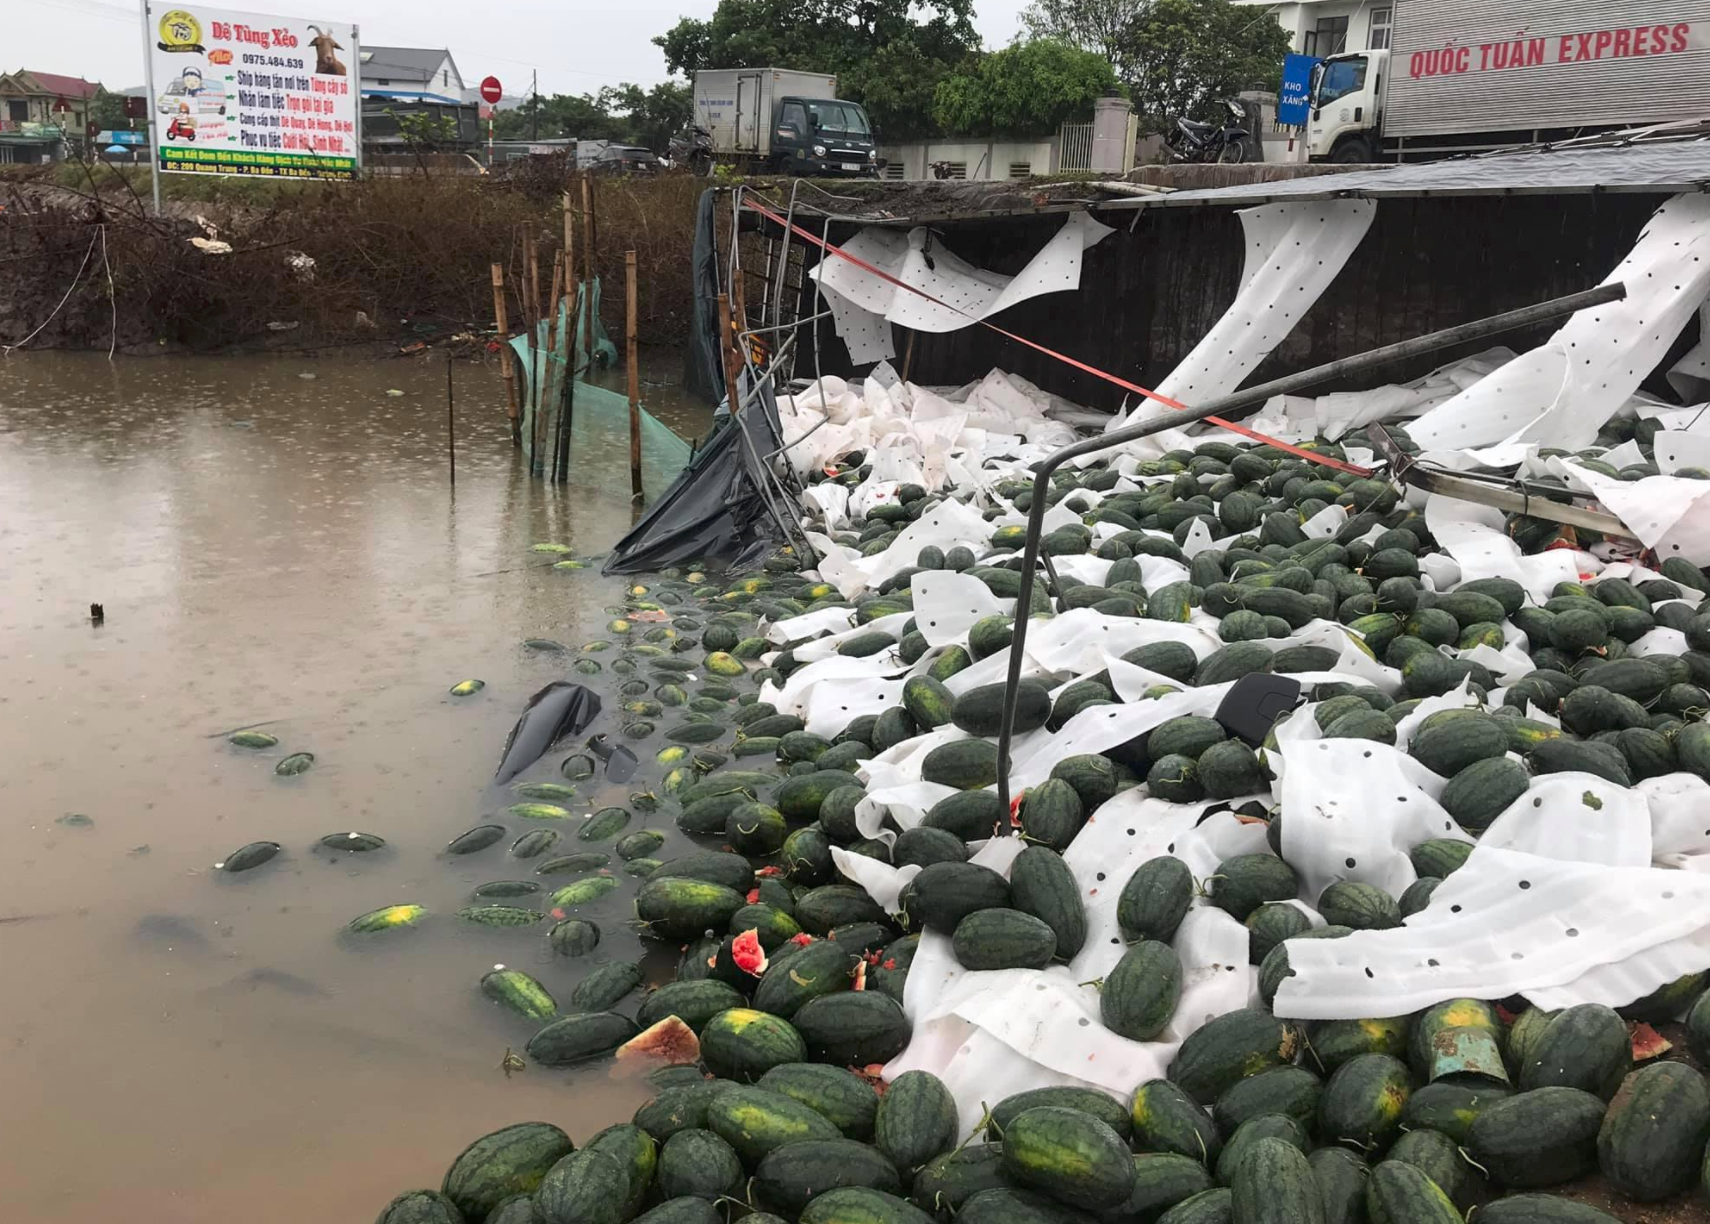 Video: Người dân Quảng Bình lội bùn gom 30 tấn dưa hấu bán giúp tài xế 